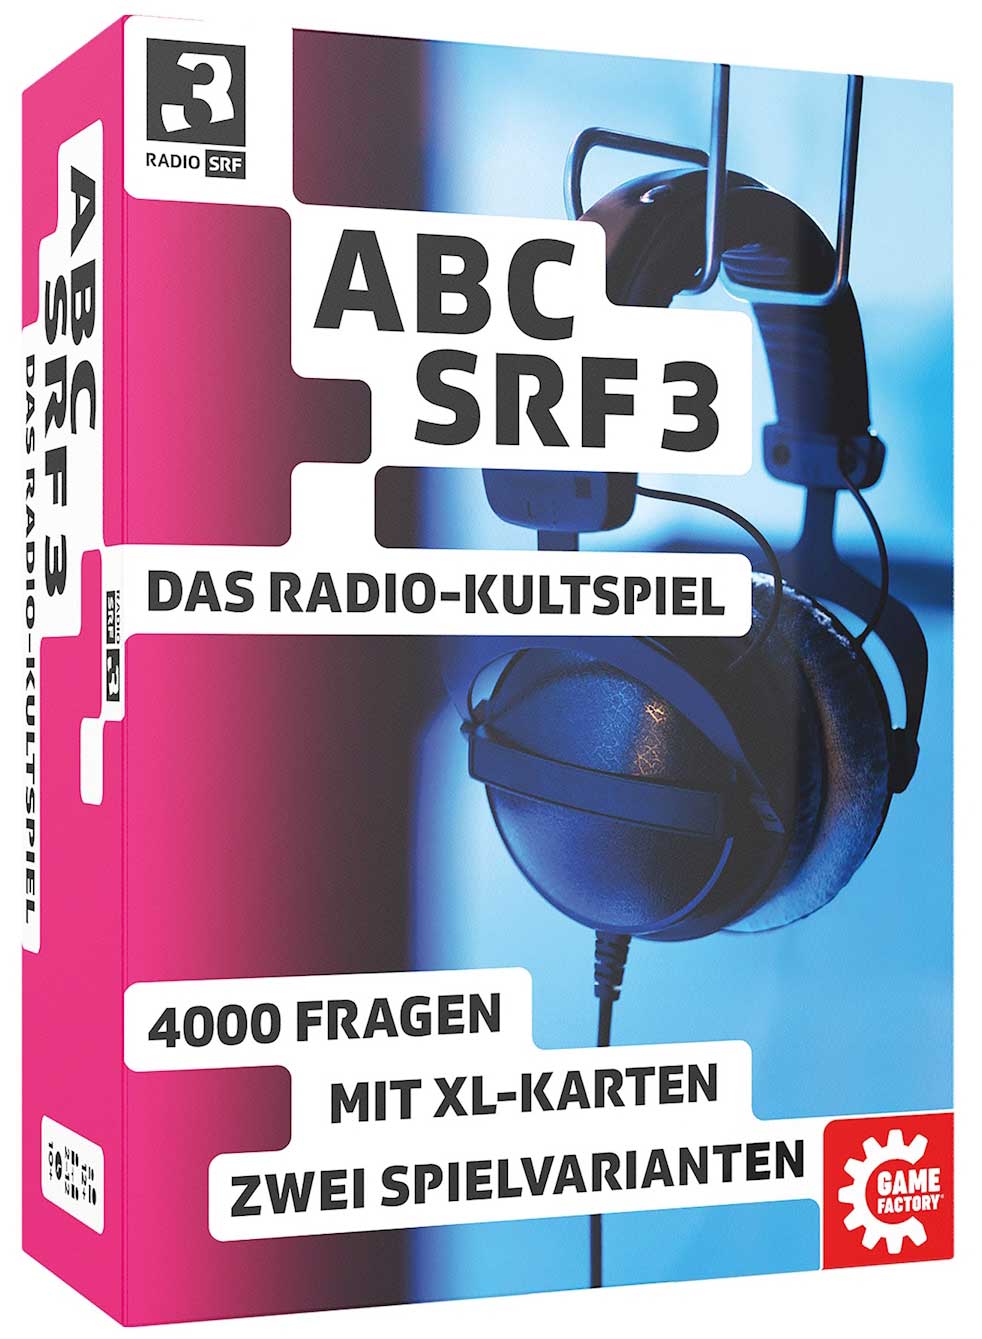 ABC SRF 3 Original